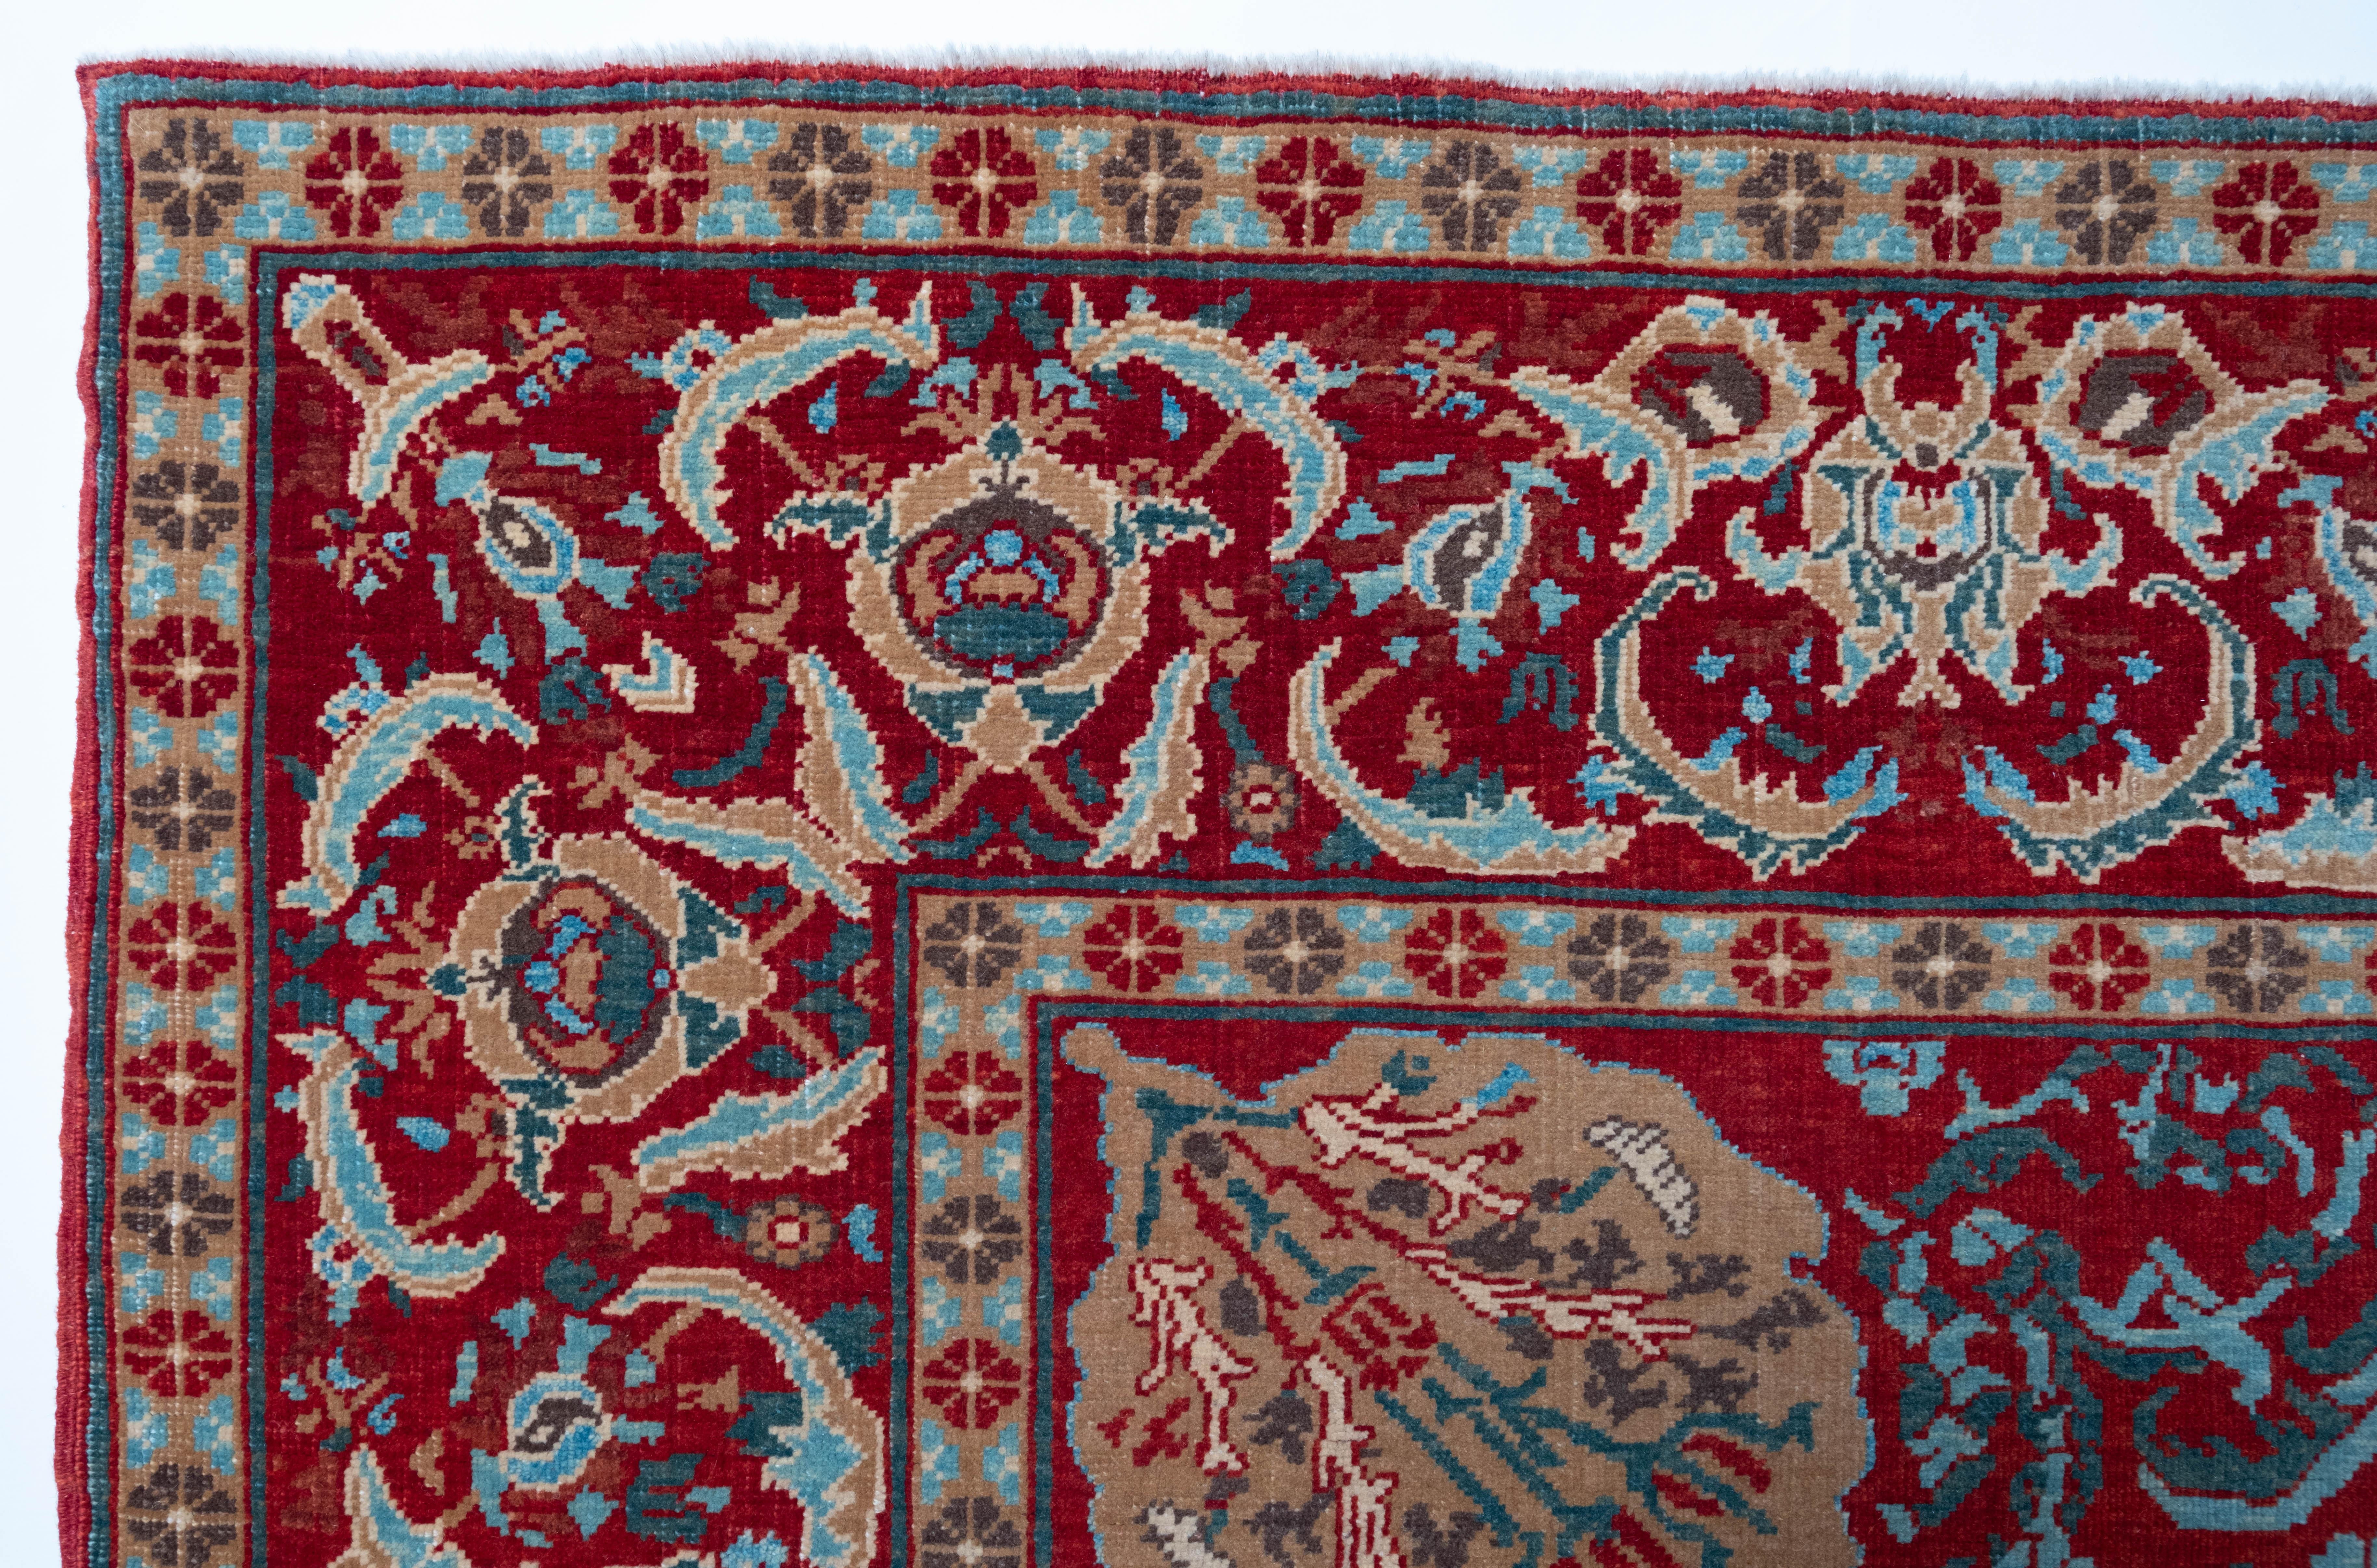 Die Teppiche der türkischen Hofmanufaktur wurden in den ägyptischen Werkstätten gewebt, die im 16. Jahrhundert vom Osmanischen Reich gegründet wurden. Diese Teppiche wurden in Ägypten geknüpft, nach den Papierkarikaturen, die wahrscheinlich in